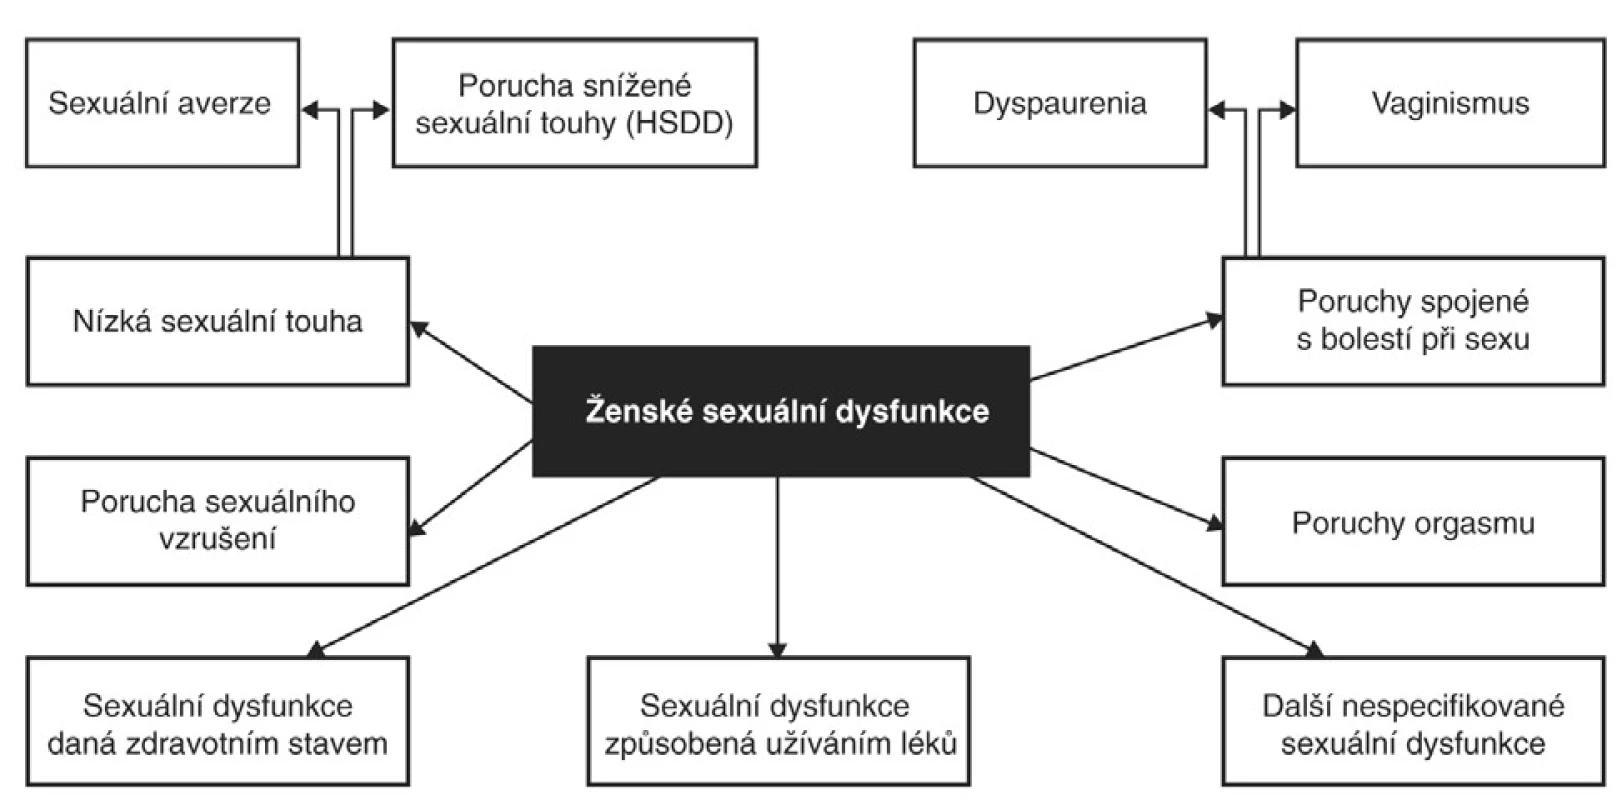 Kategorie ženských sexuálních dysfunkcí.
Zdroj: DSM-IV-TR